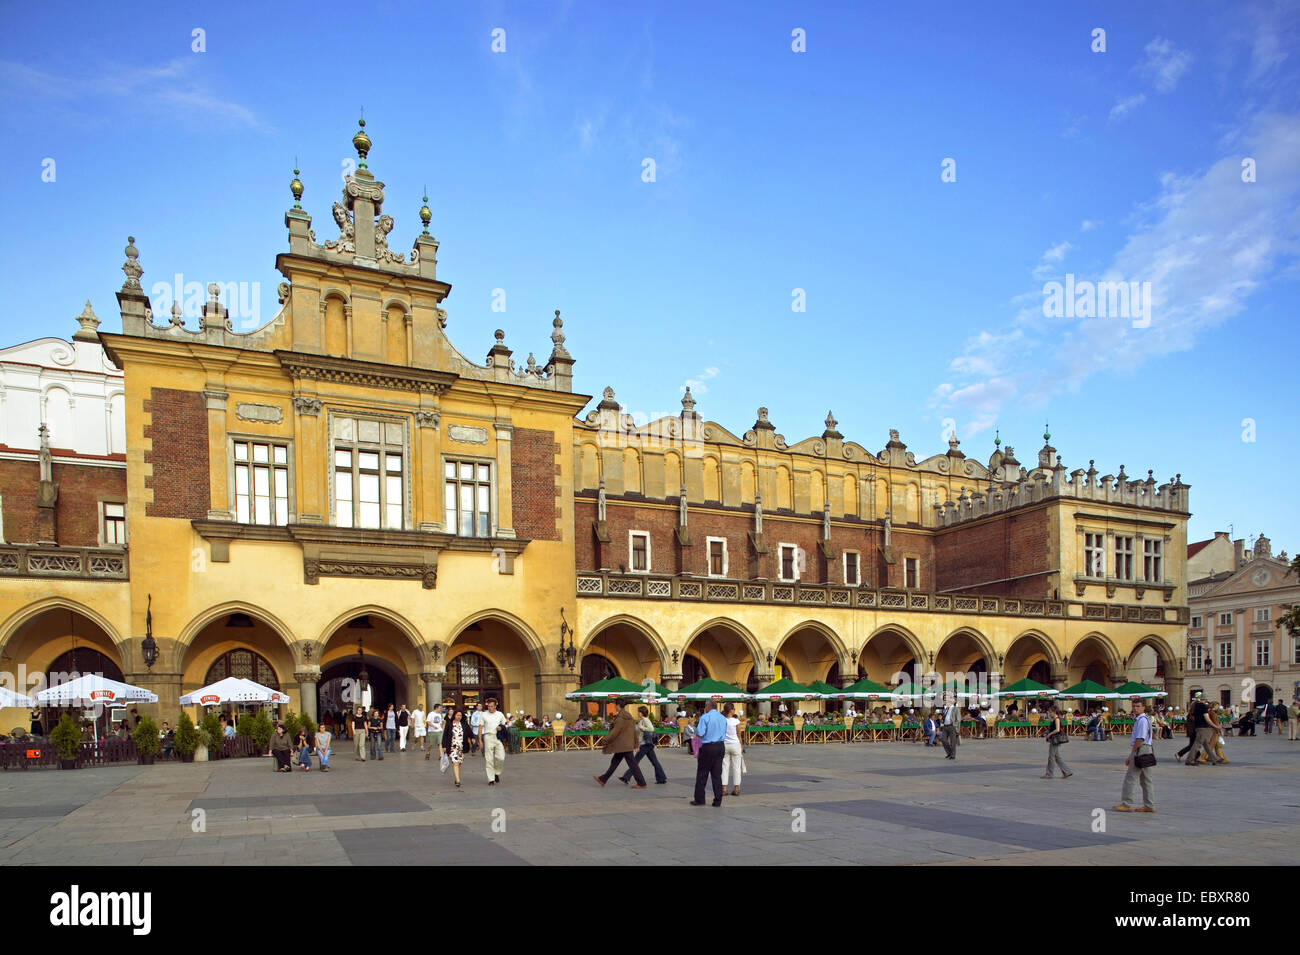 Poland, Krakow old market Stock Photo